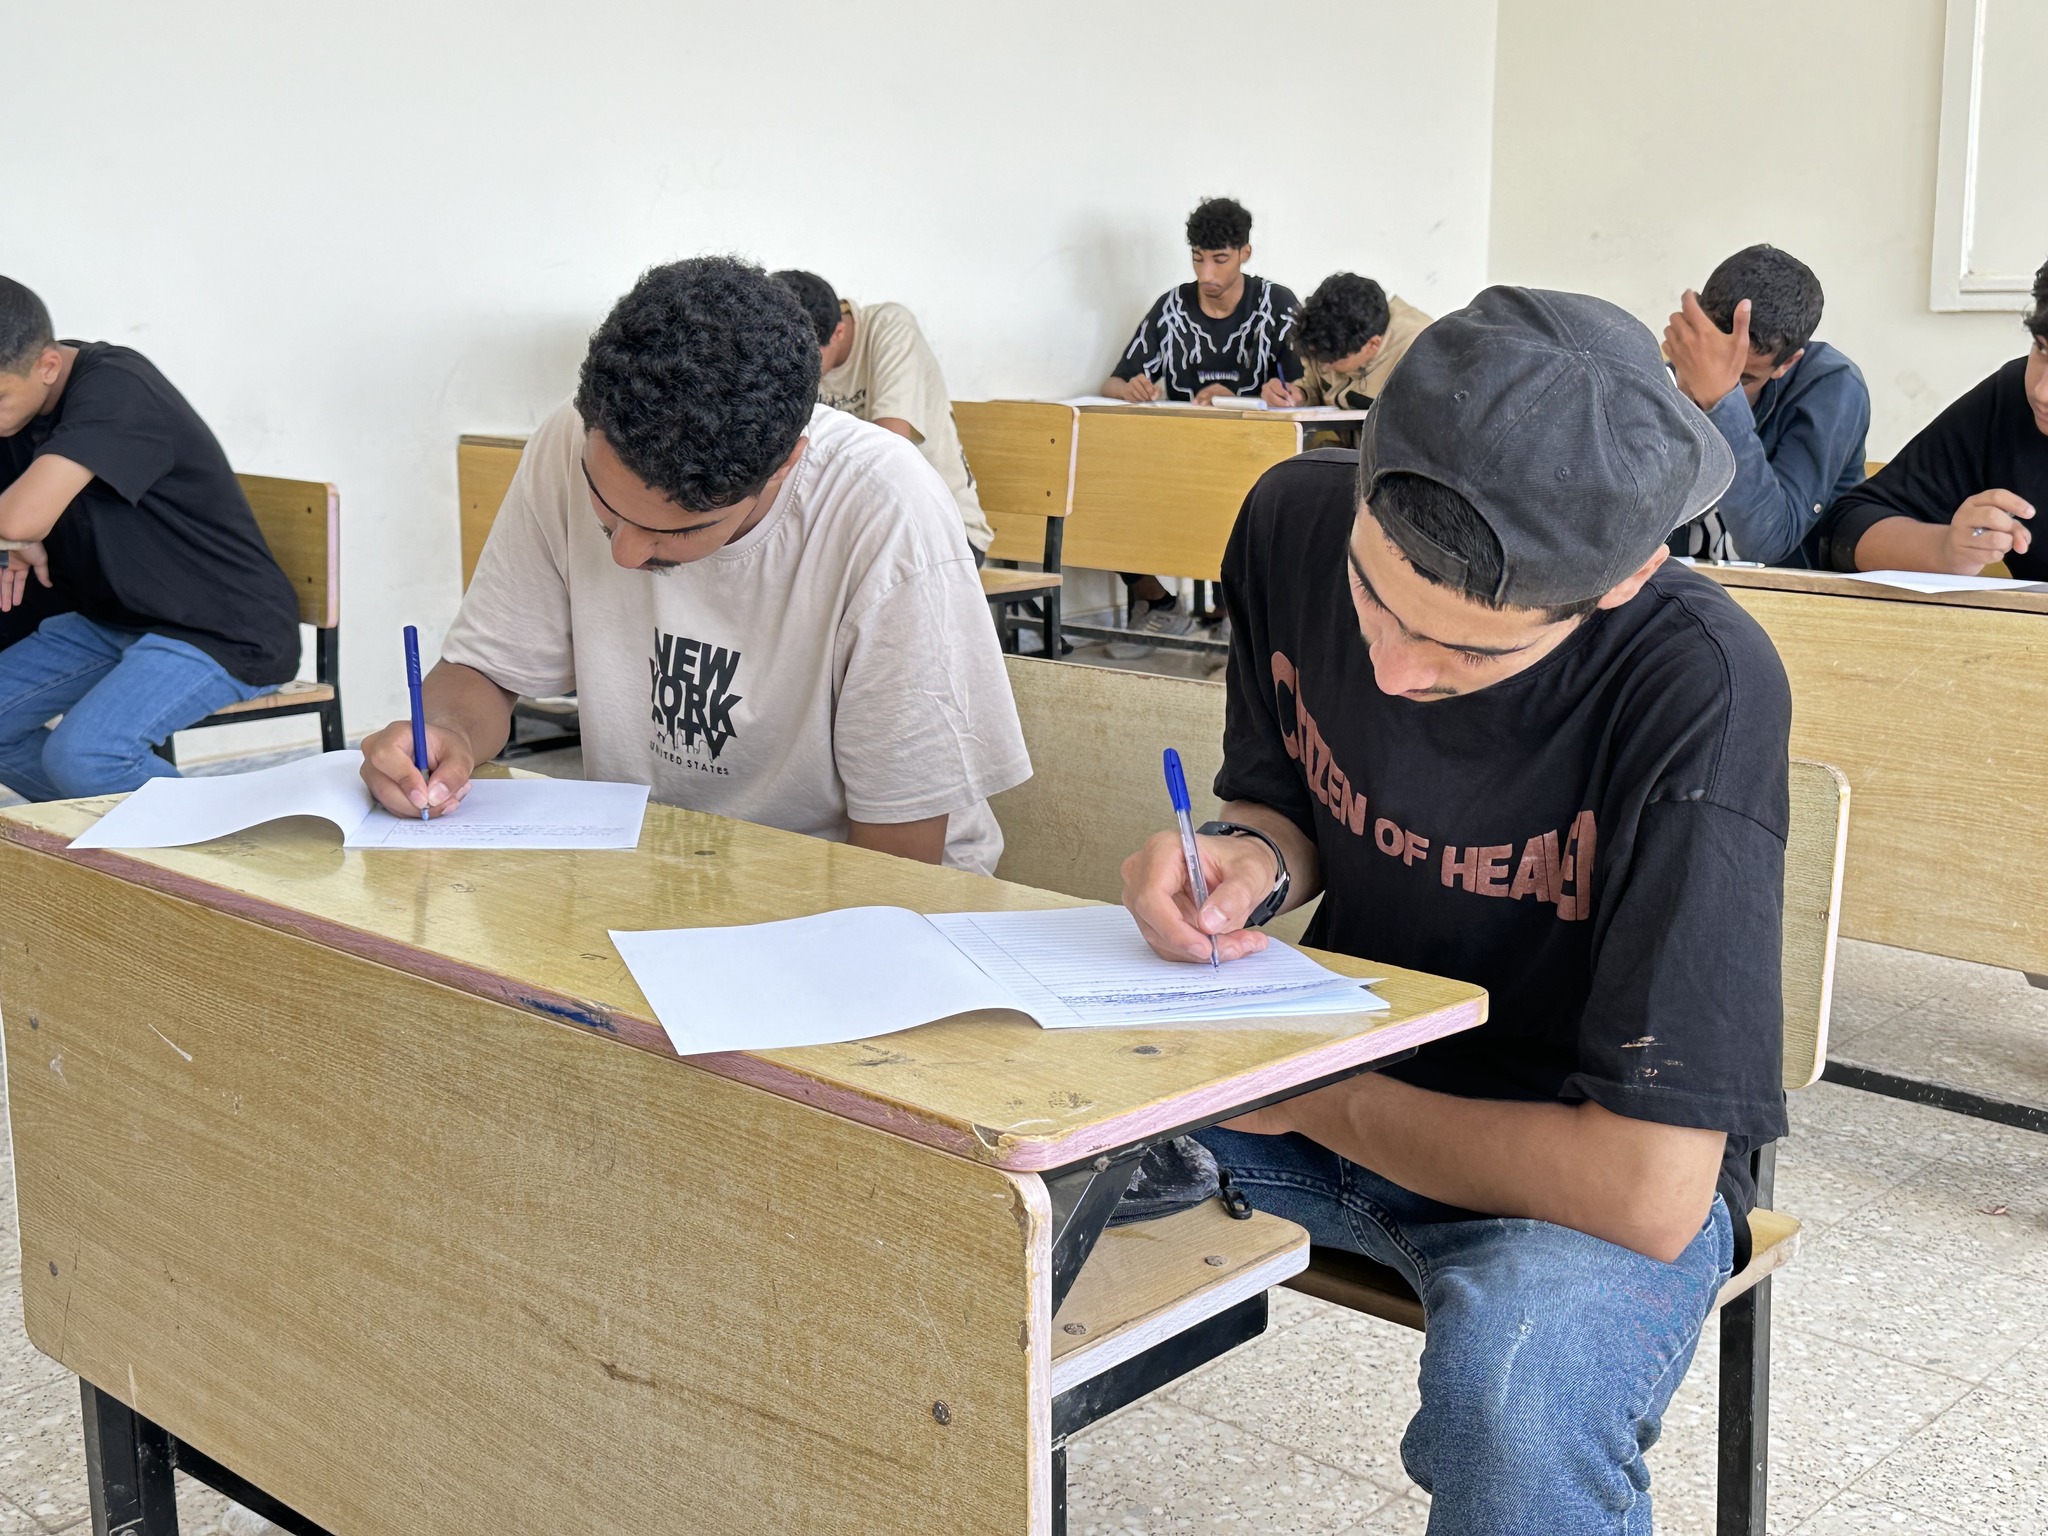 انطلاق اِمتحانات شهادة إتمام مرحلة التّعليم الثانوي للعام 2023-2024م بإجراء اِمتحان مادة الإنشاء والتّعبير .